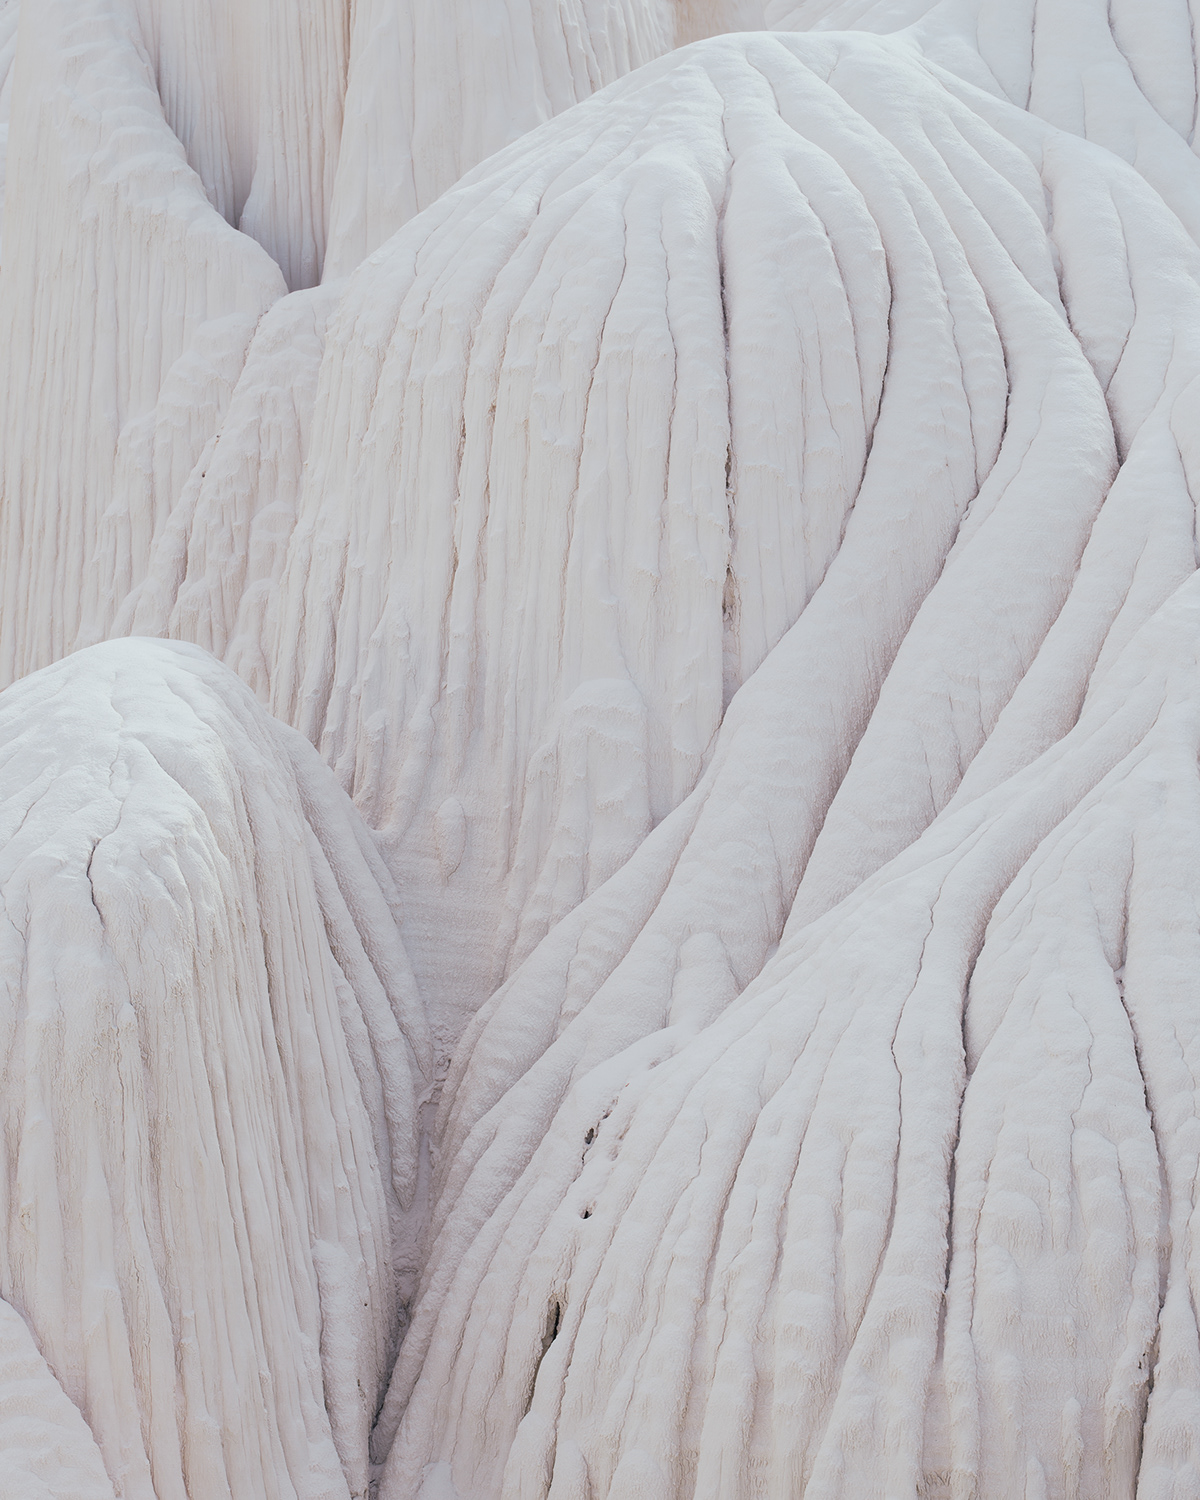 erosion formation ghostly Landscape Nature otherworldly sandstone sculpture strange White